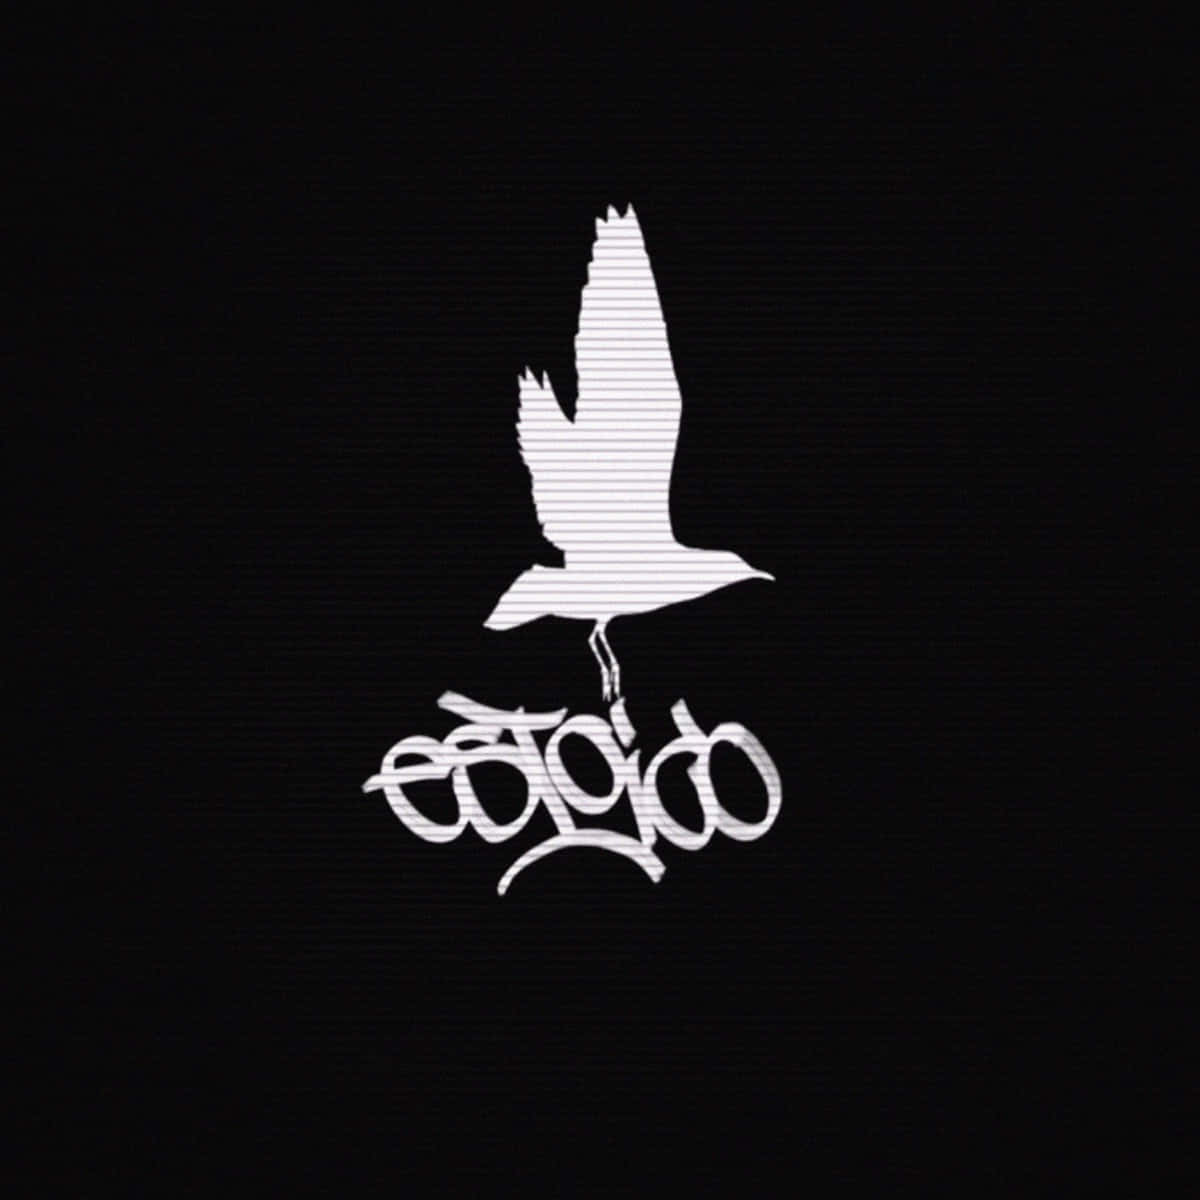 Logoet til rapper Lil Peep vises på en mysteriøs baggrund. Wallpaper